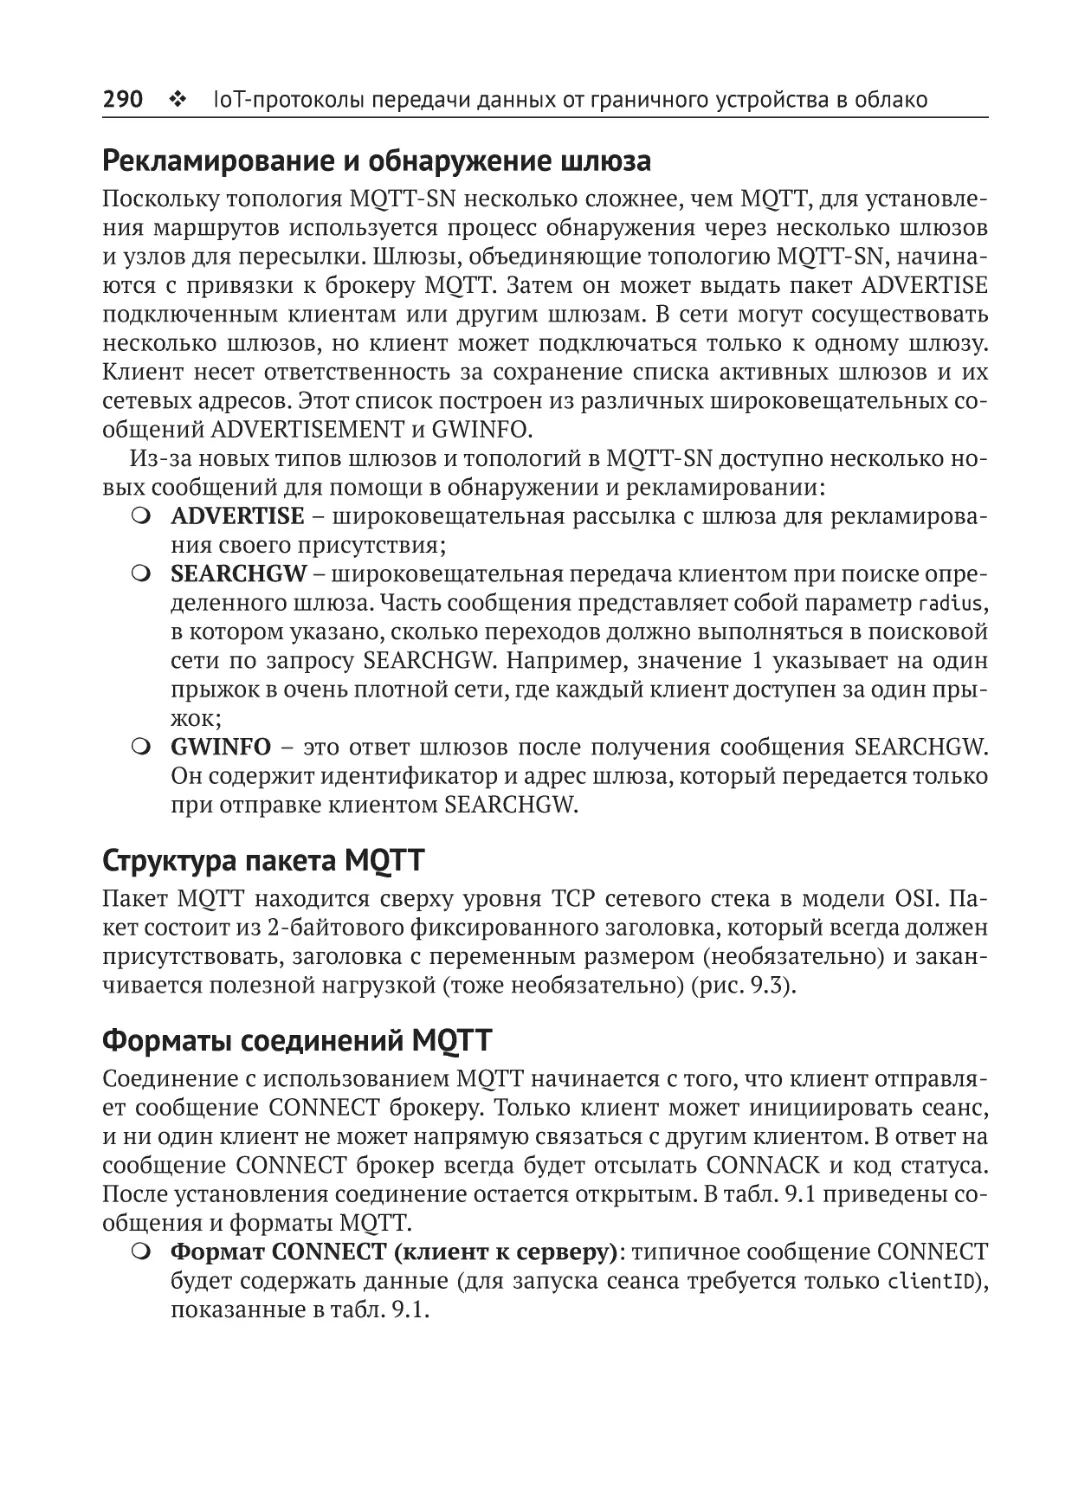 Рекламирование и обнаружение шлюза
Структура пакета MQTT
Форматы соединений MQTT